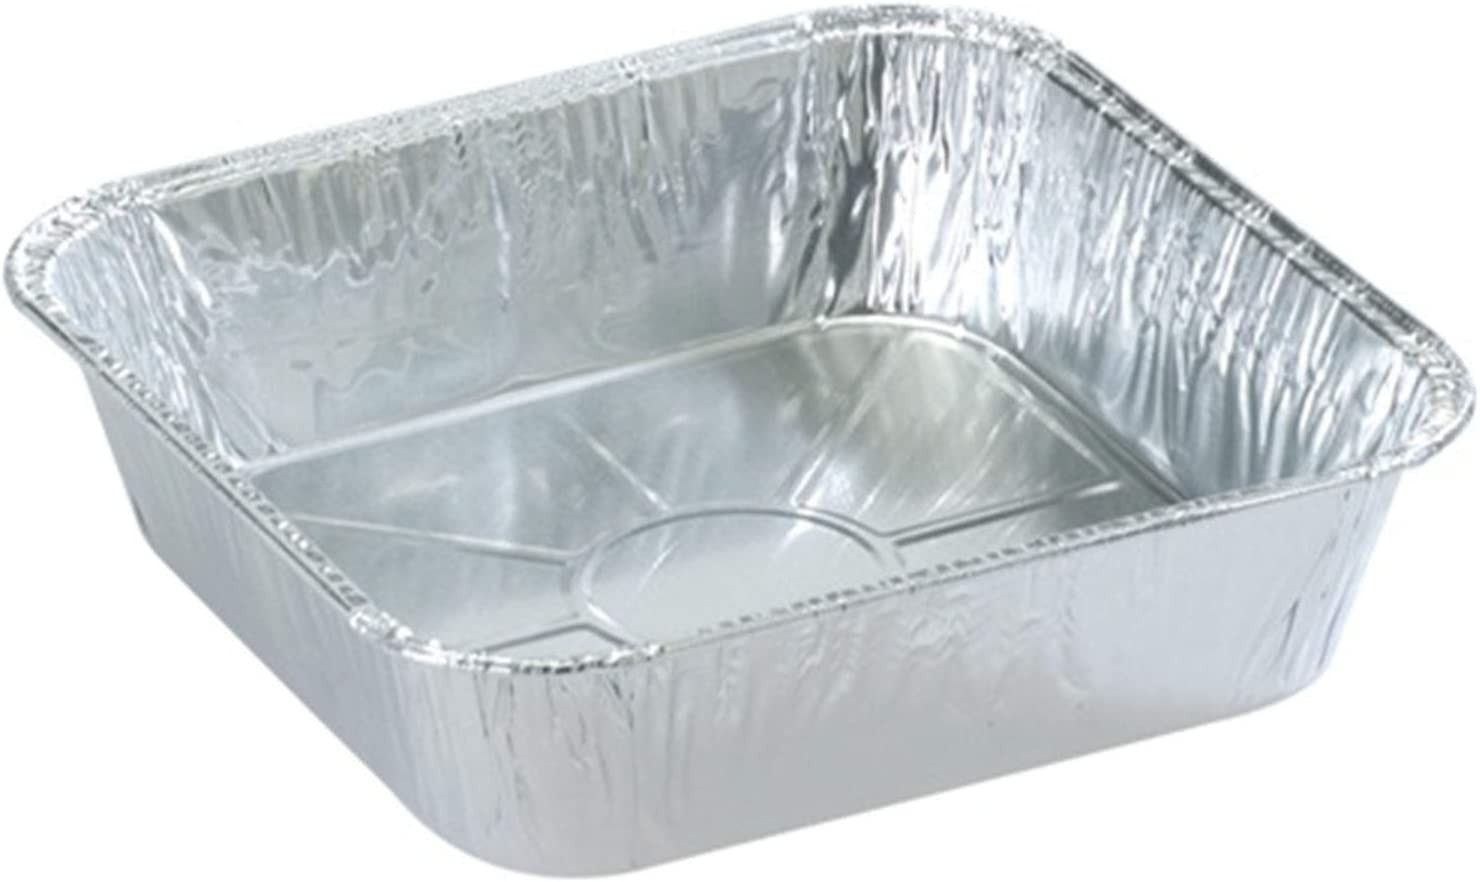 TigerChef Disposable Aluminum Foil Square Cake Pans, 9" x 9" 30/Pack